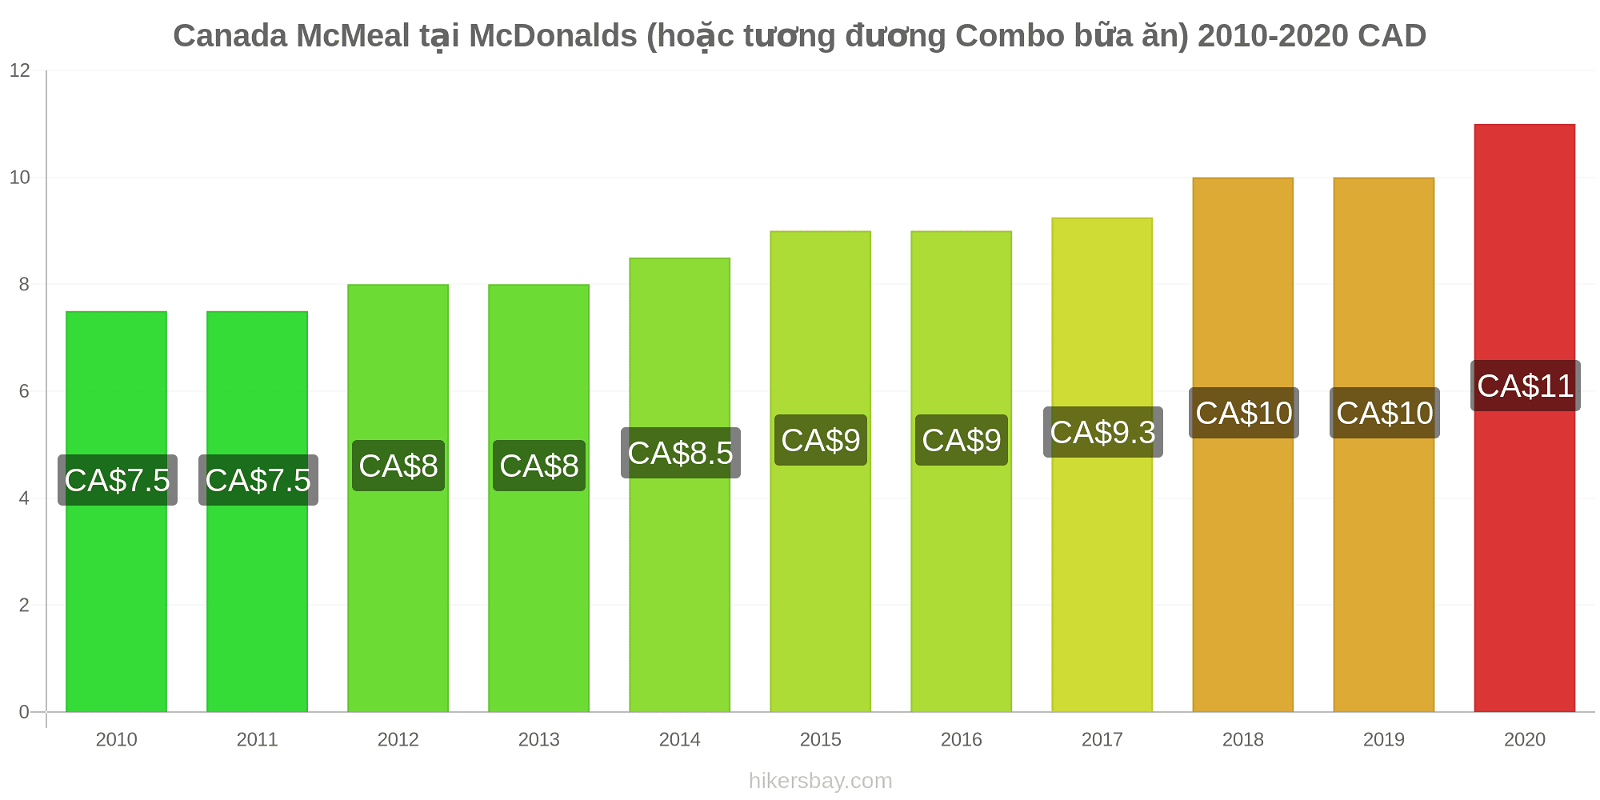 Canada thay đổi giá McMeal tại McDonalds (hoặc tương đương Combo bữa ăn) hikersbay.com